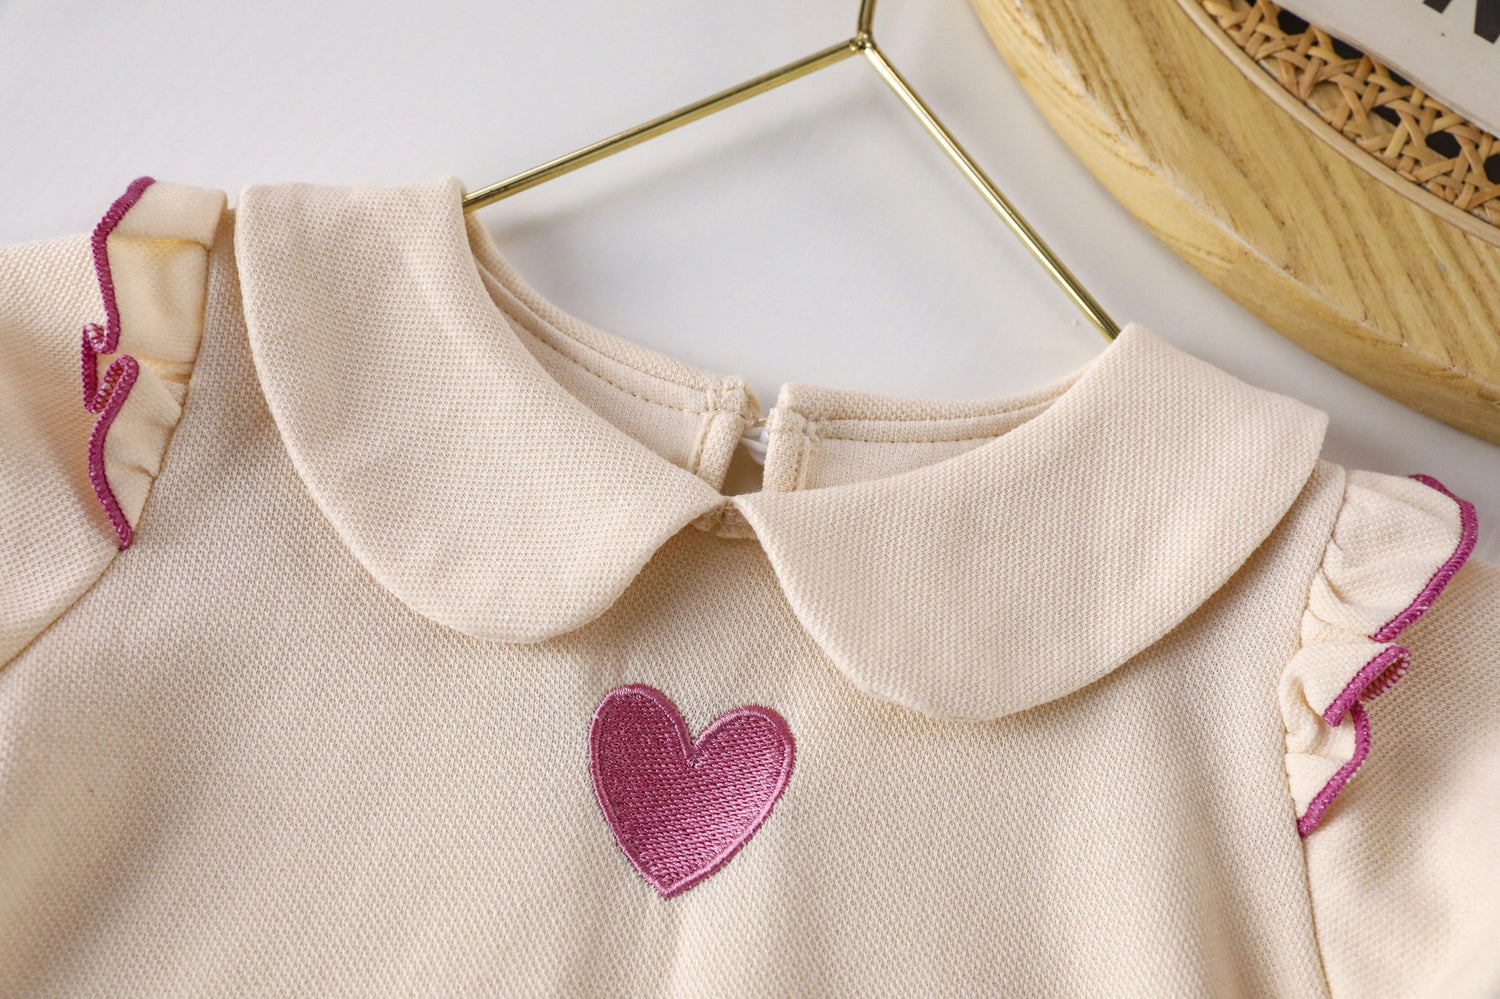 [721107] - Baju Atasan Blouse Lengan Pendek Ruffle Anak Perempuan - Motif Plain Heart